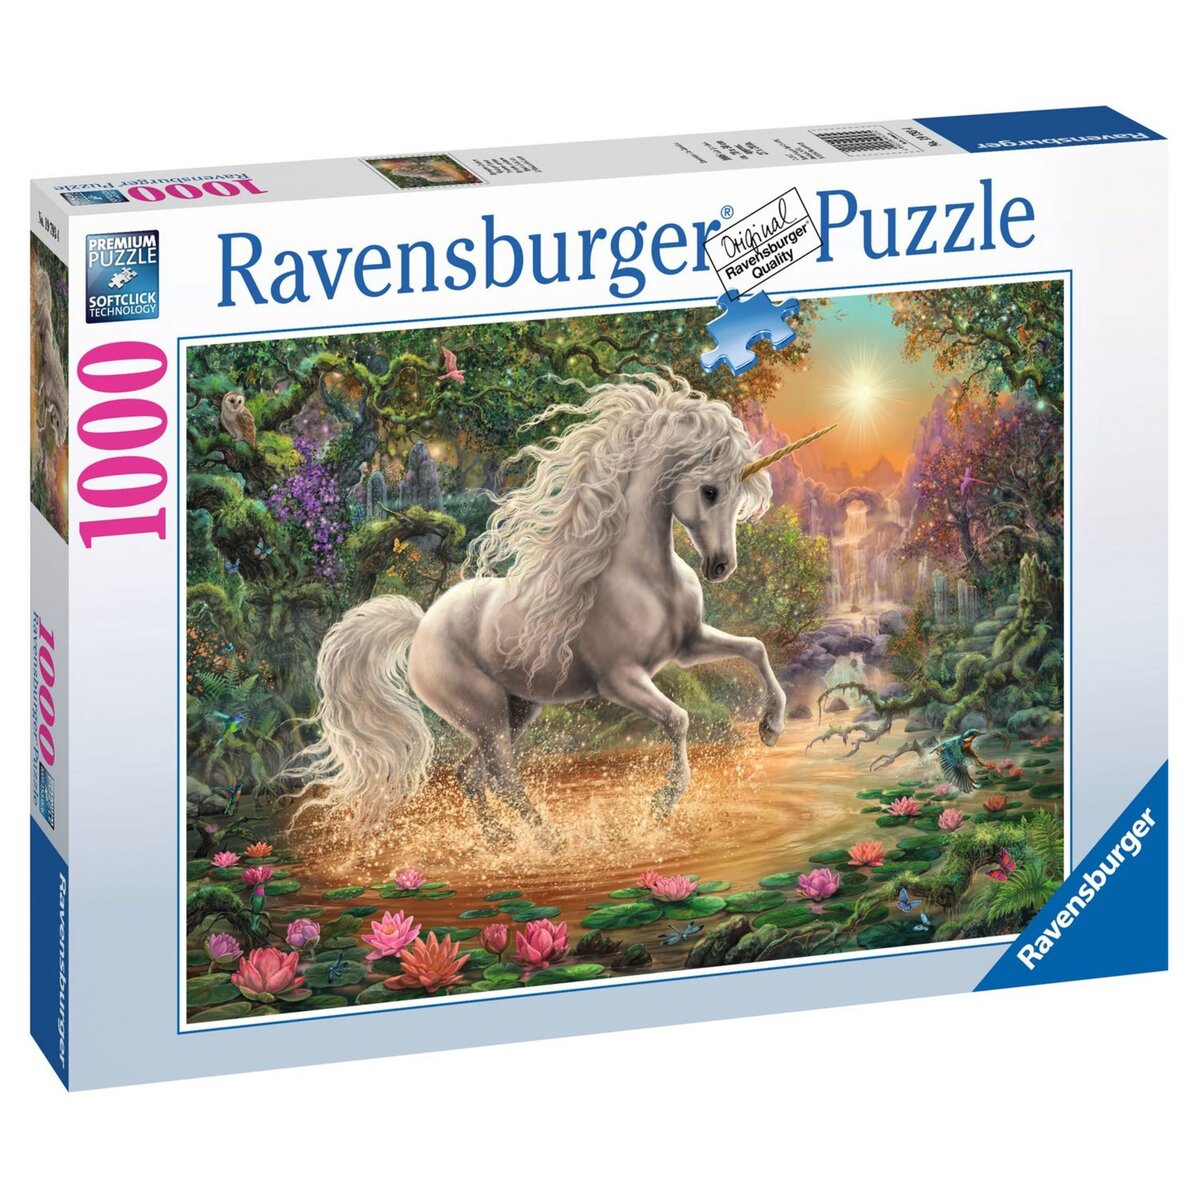 RAVENSBURGER Puzzle 1000 pièces Mystique licorne